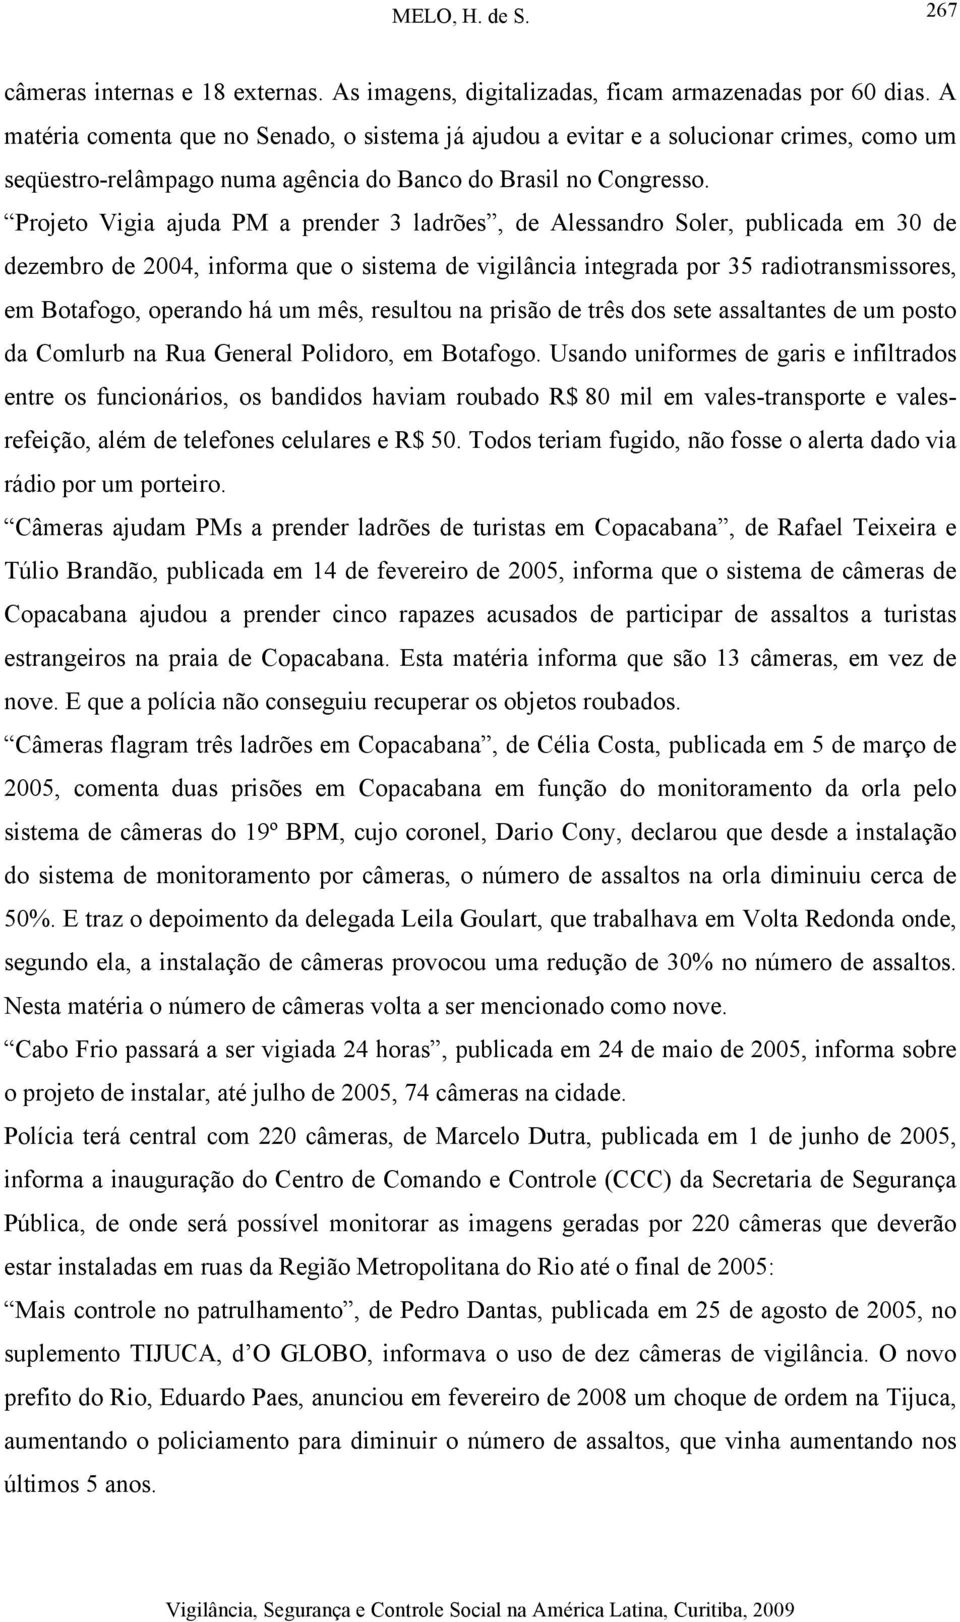 Projeto Vigia ajuda PM a prender 3 ladrões, de Alessandro Soler, publicada em 30 de dezembro de 2004, informa que o sistema de vigilância integrada por 35 radiotransmissores, em Botafogo, operando há